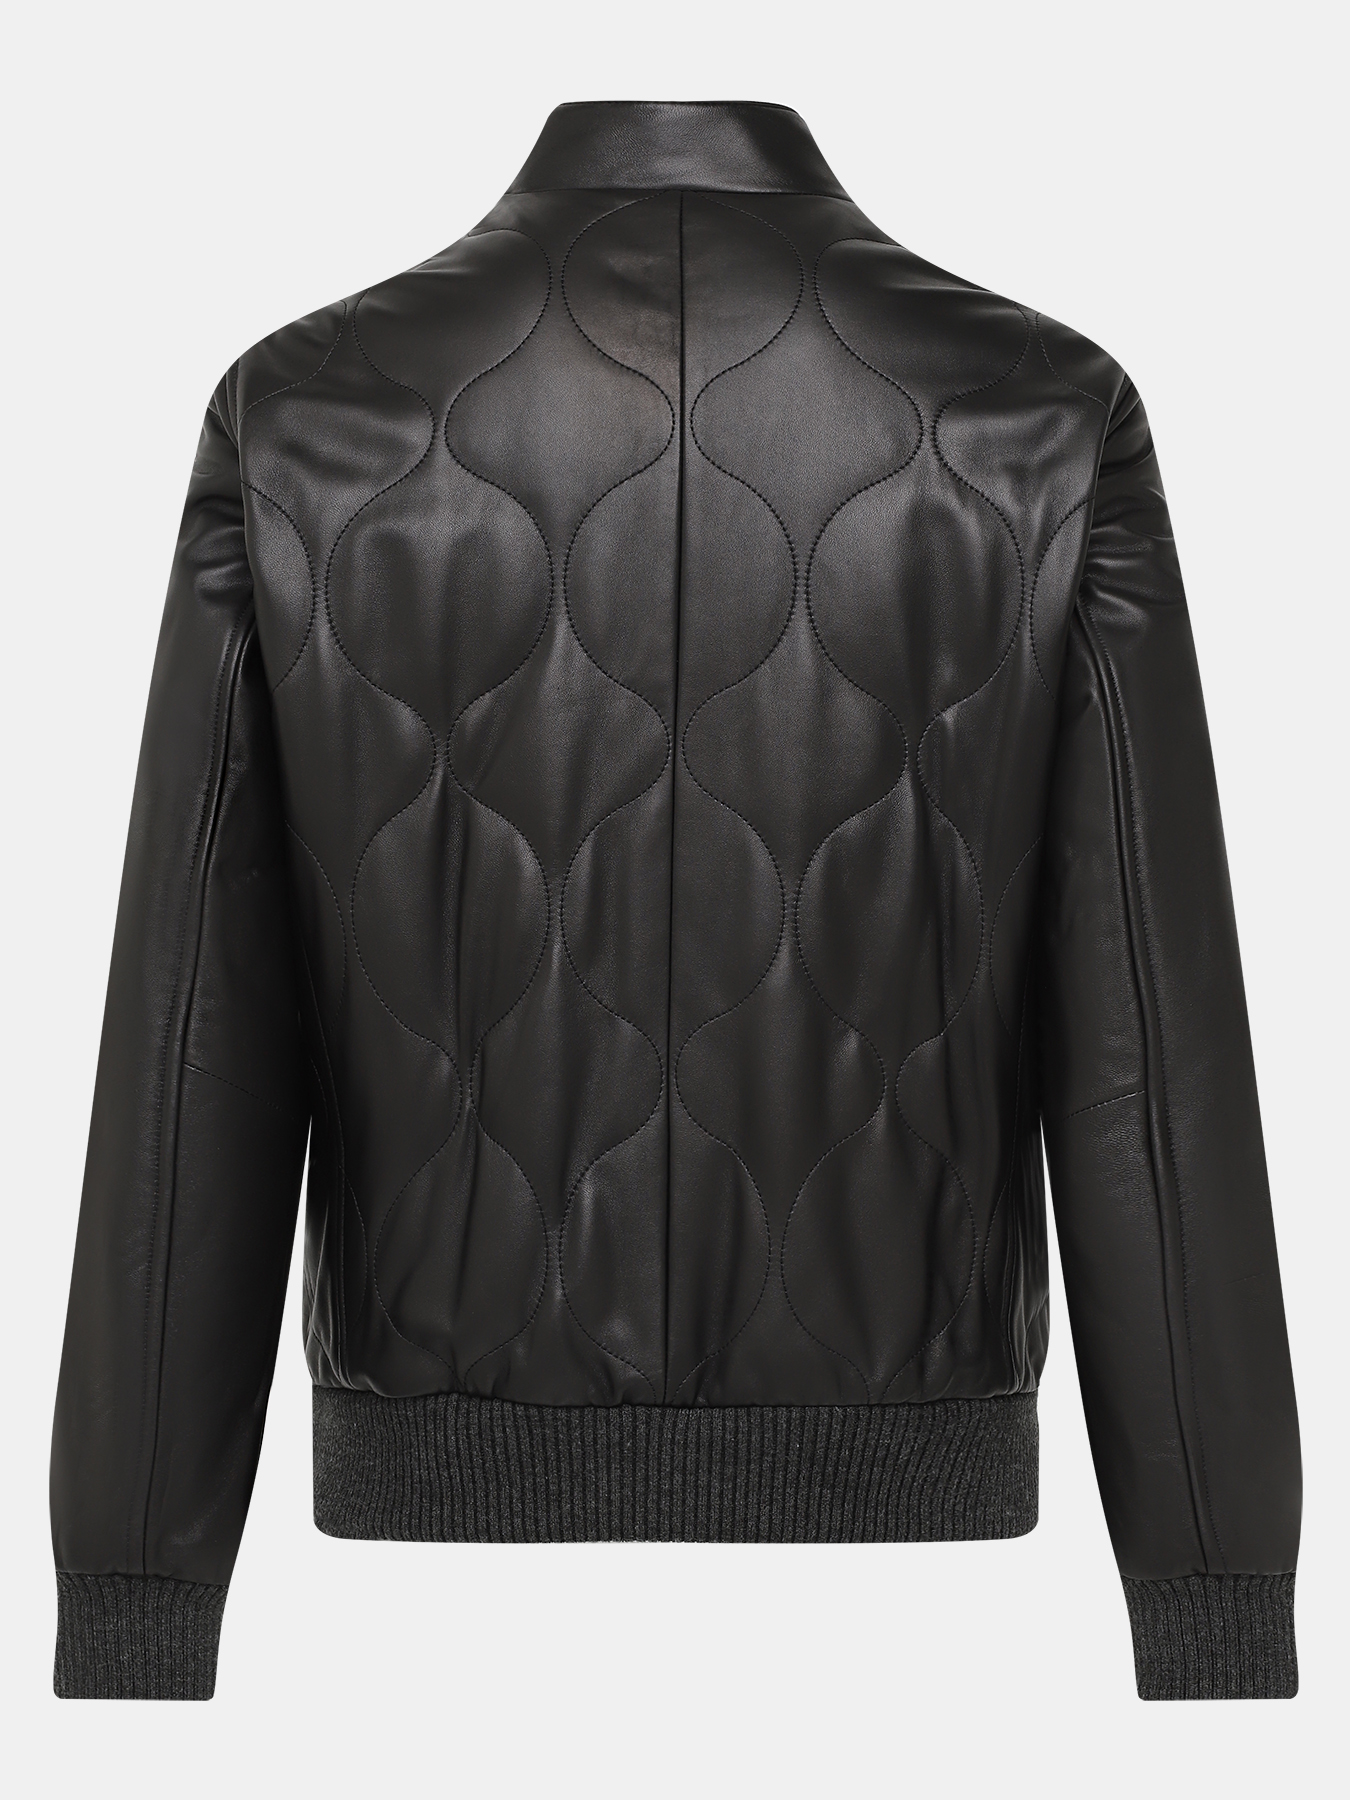 Кожаная куртка Alessandro Manzoni 390968-030, цвет черный, размер 58 - фото 4